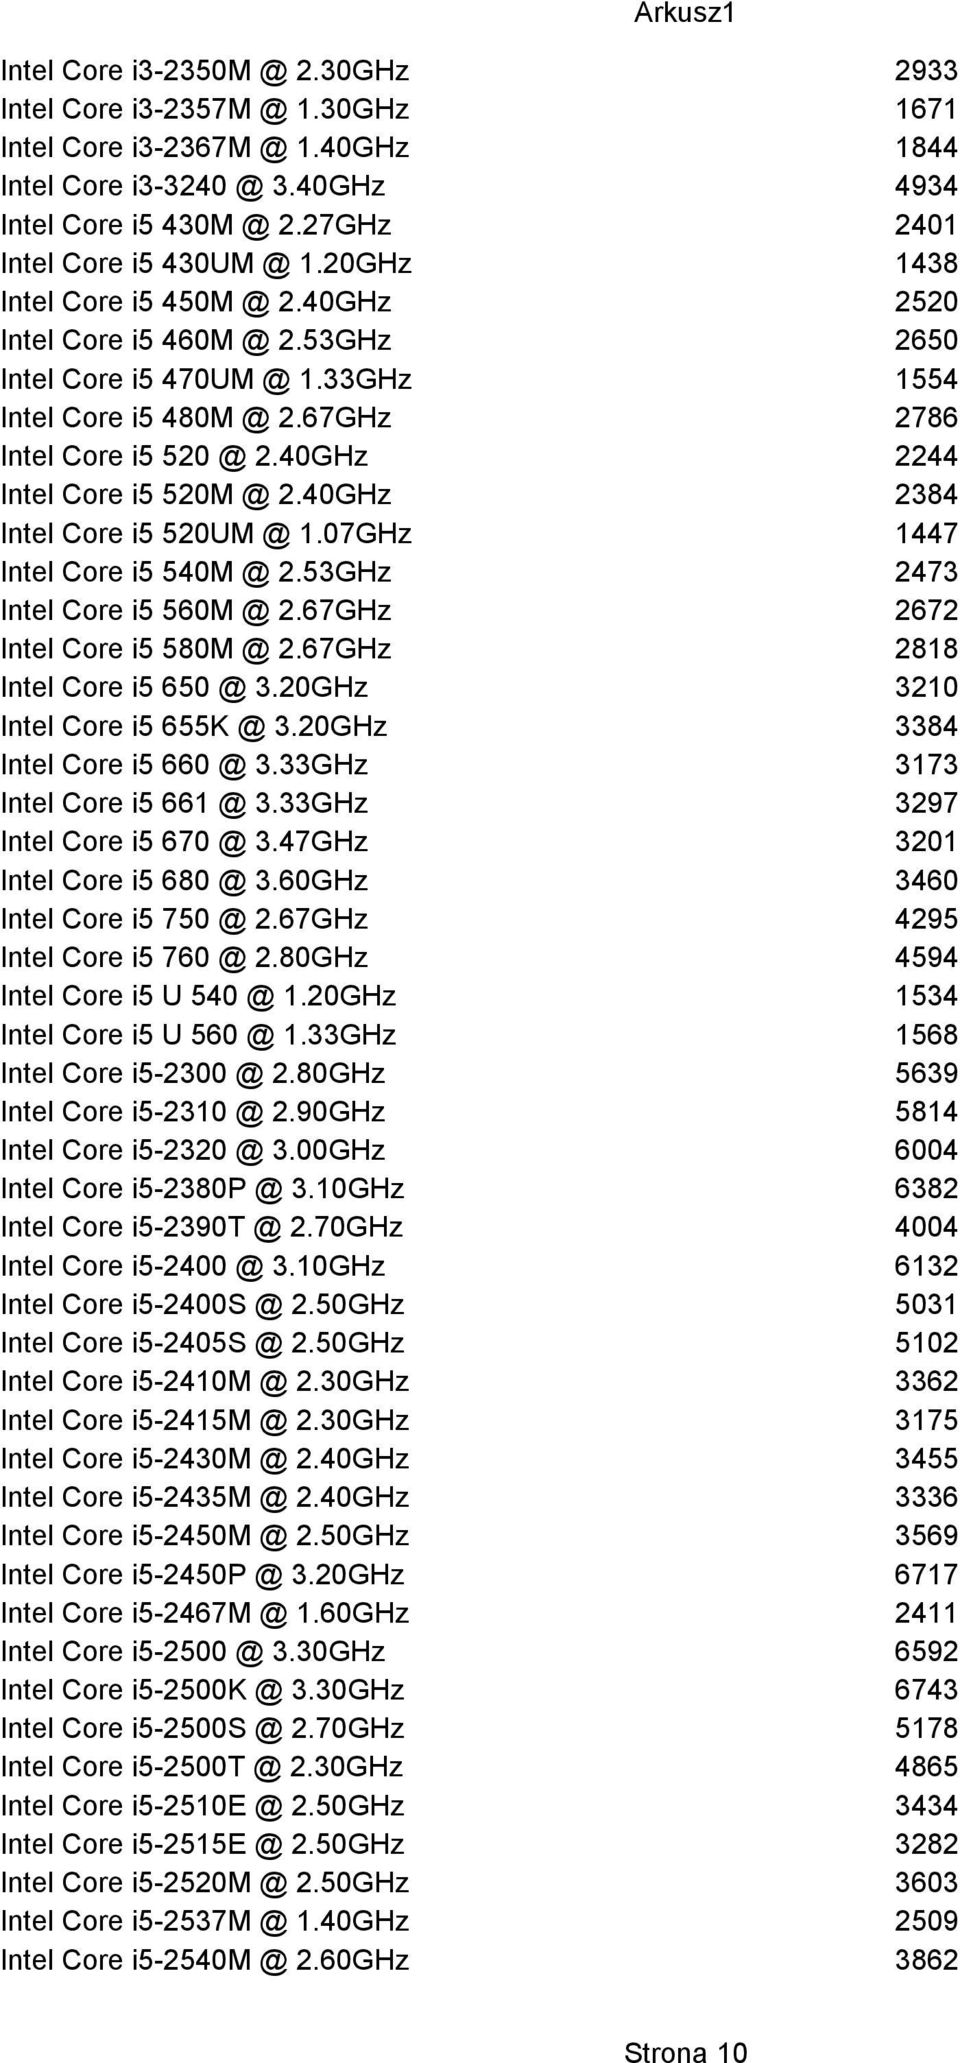 40GHz 2244 Intel Core i5 520M @ 2.40GHz 2384 Intel Core i5 520UM @ 1.07GHz 1447 Intel Core i5 540M @ 2.53GHz 2473 Intel Core i5 560M @ 2.67GHz 2672 Intel Core i5 580M @ 2.